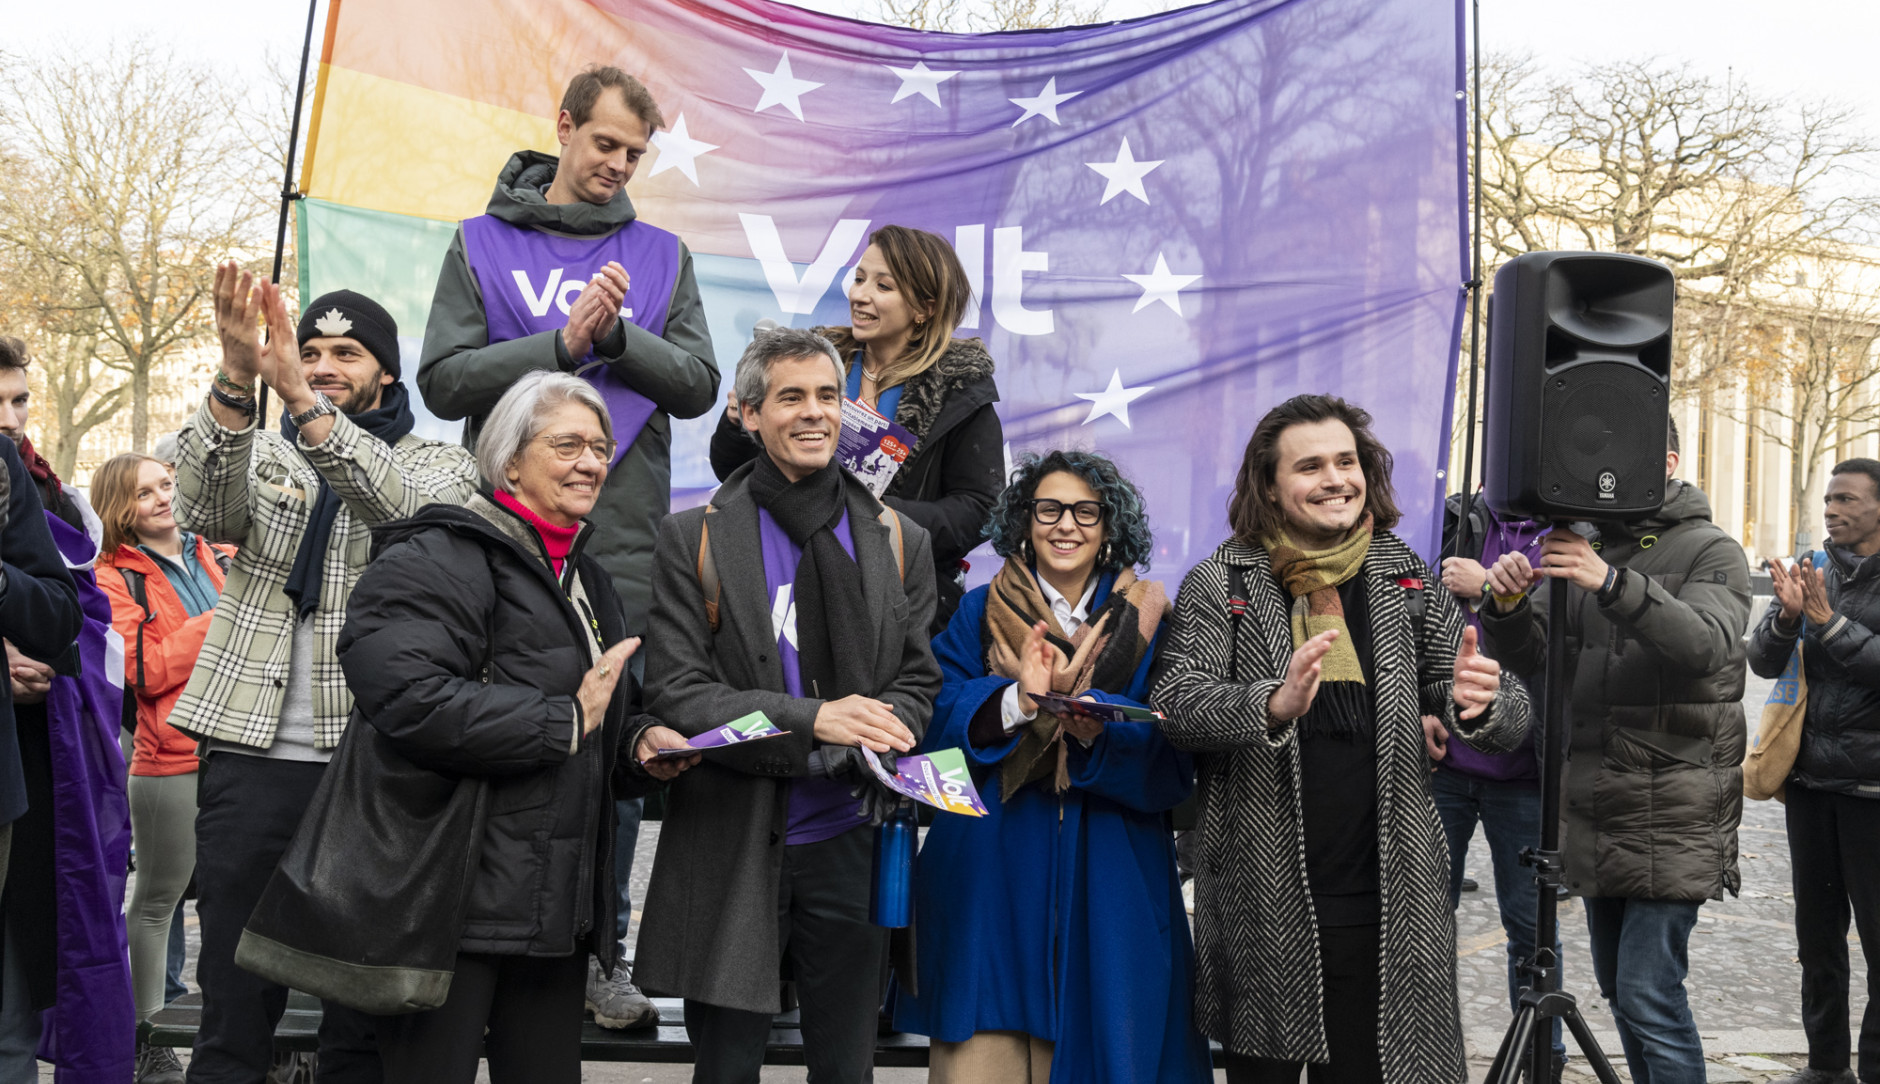 Bild des neuen Europäischen Vorstands in Paris, die vor einer Gruppe Menschen stehen und klatschen